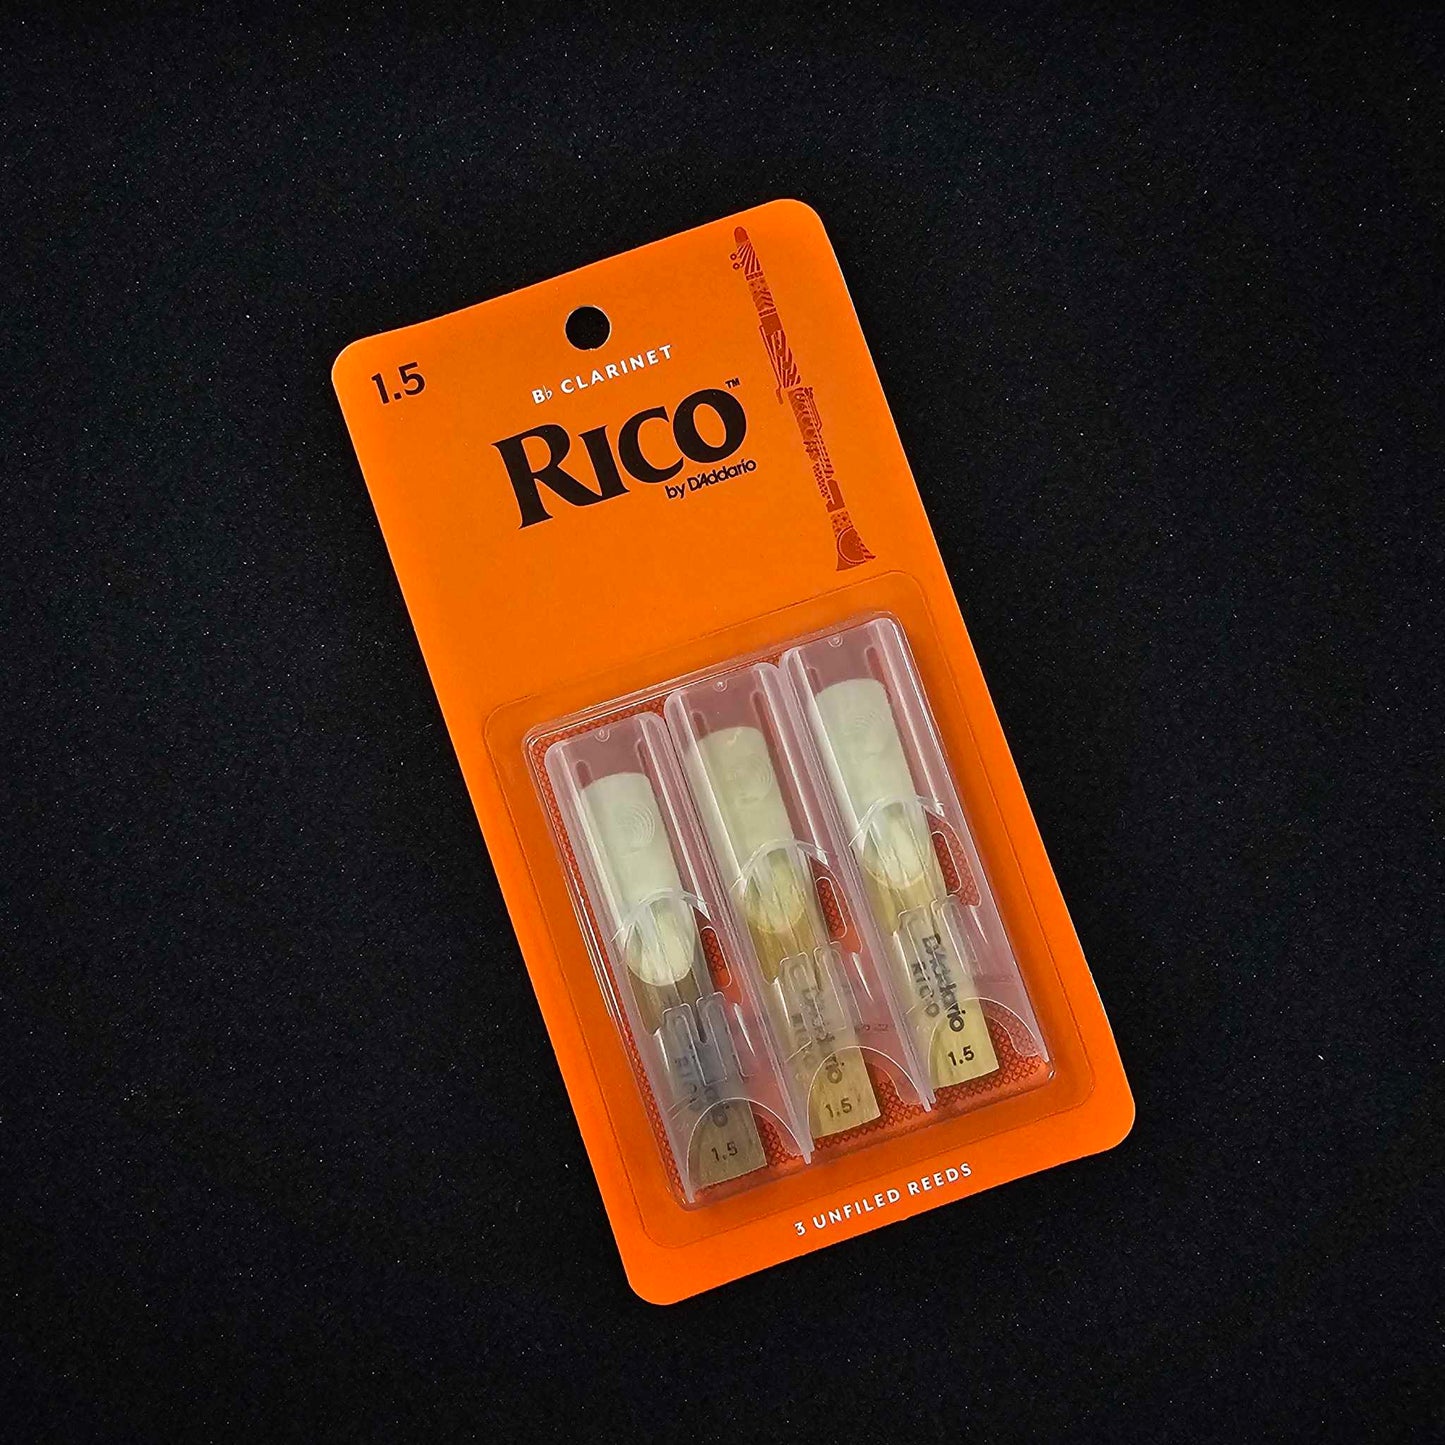 Rico 1.5 Reeds - 3pk